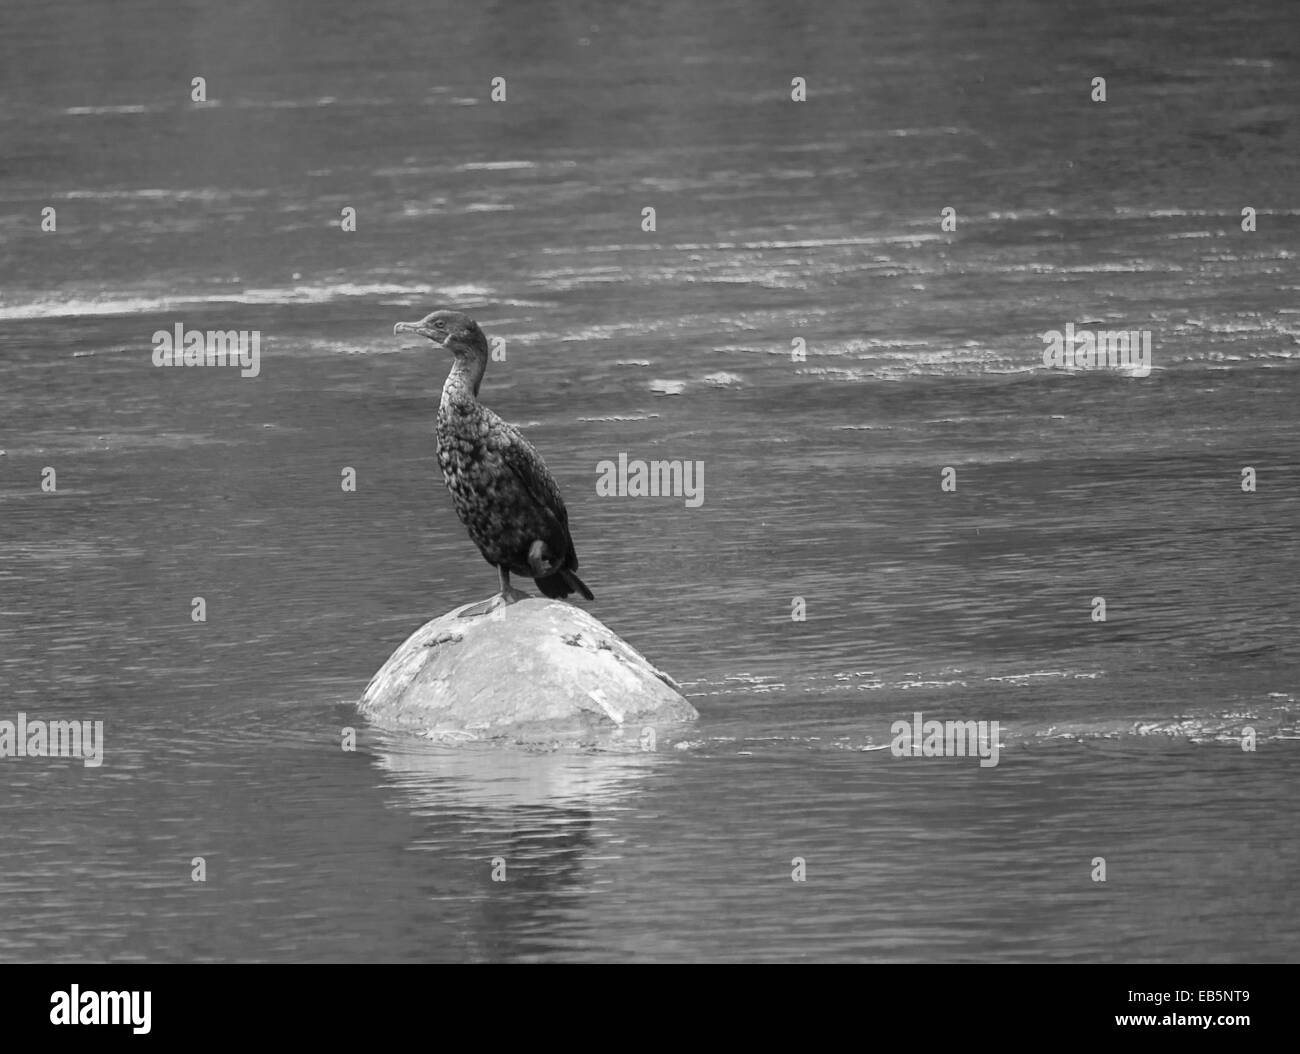 Cormorant standing on rock in a river at Parc nature de l'ile-de-la-visitation Stock Photo